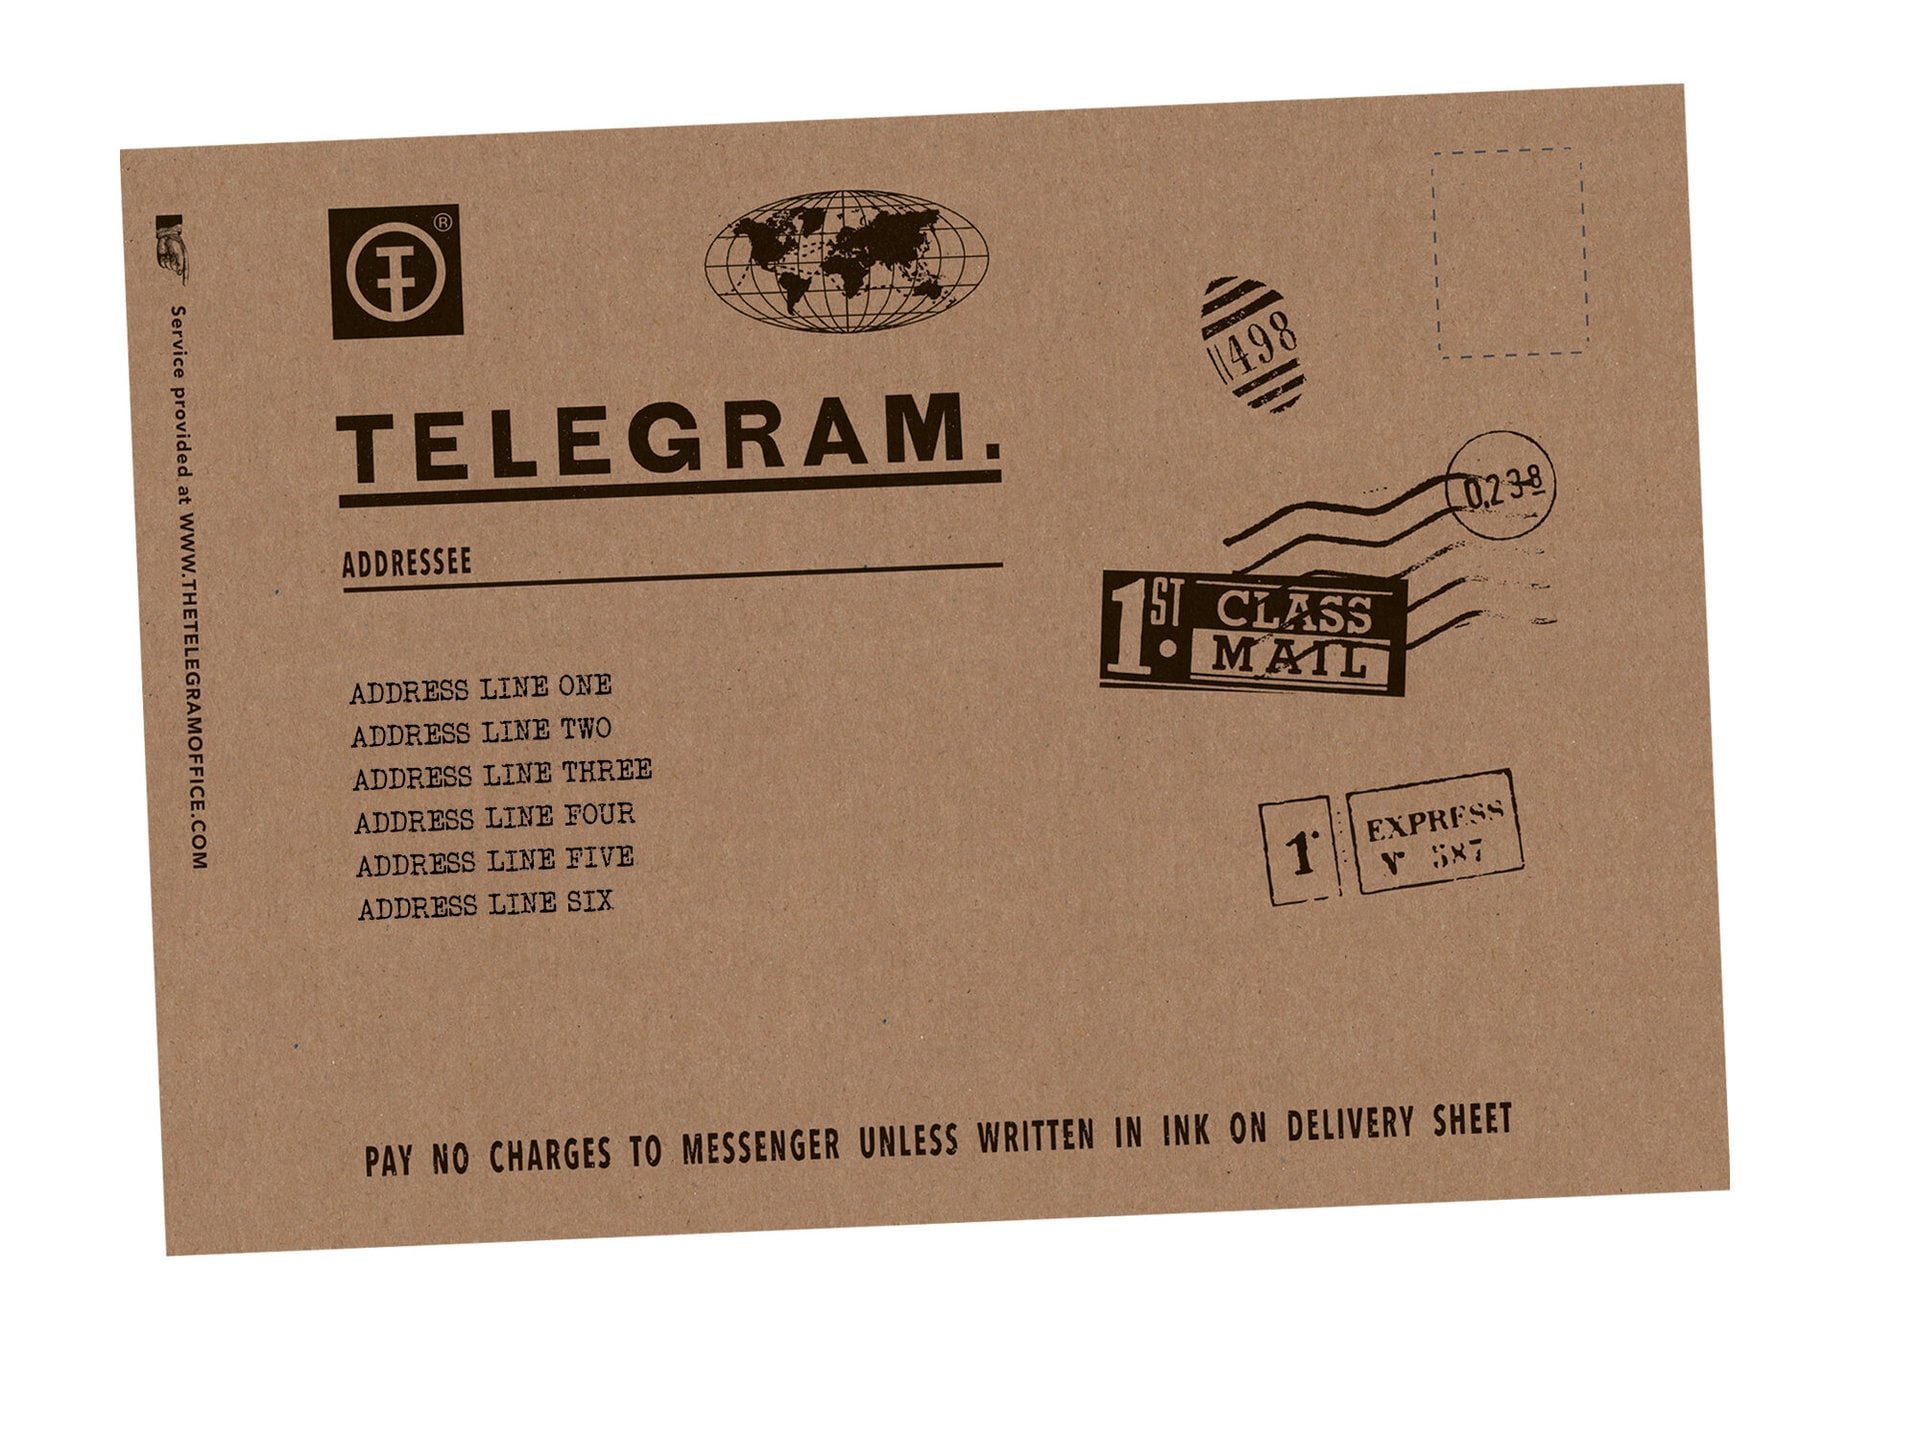 Send Greetings by Telegram - Cablegram